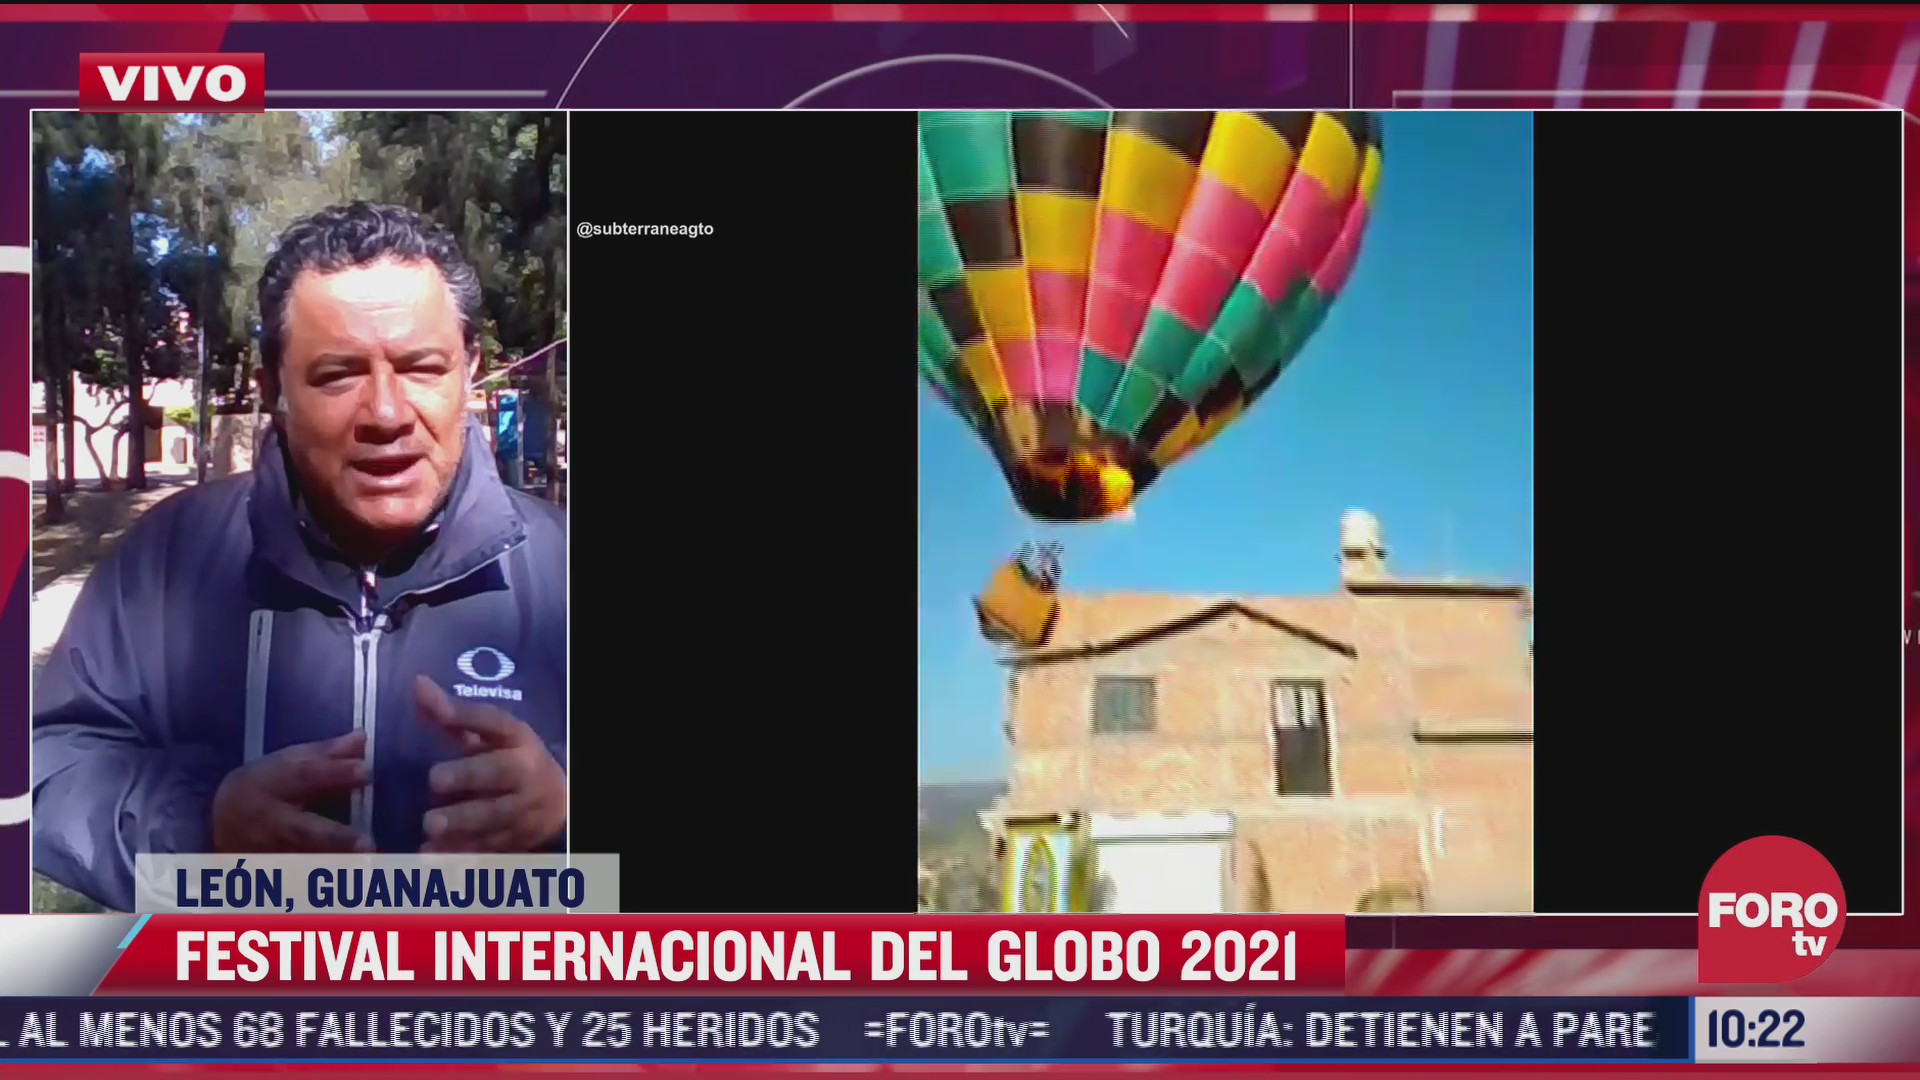 sigue festival internacional del globo 2021 en guanajuato